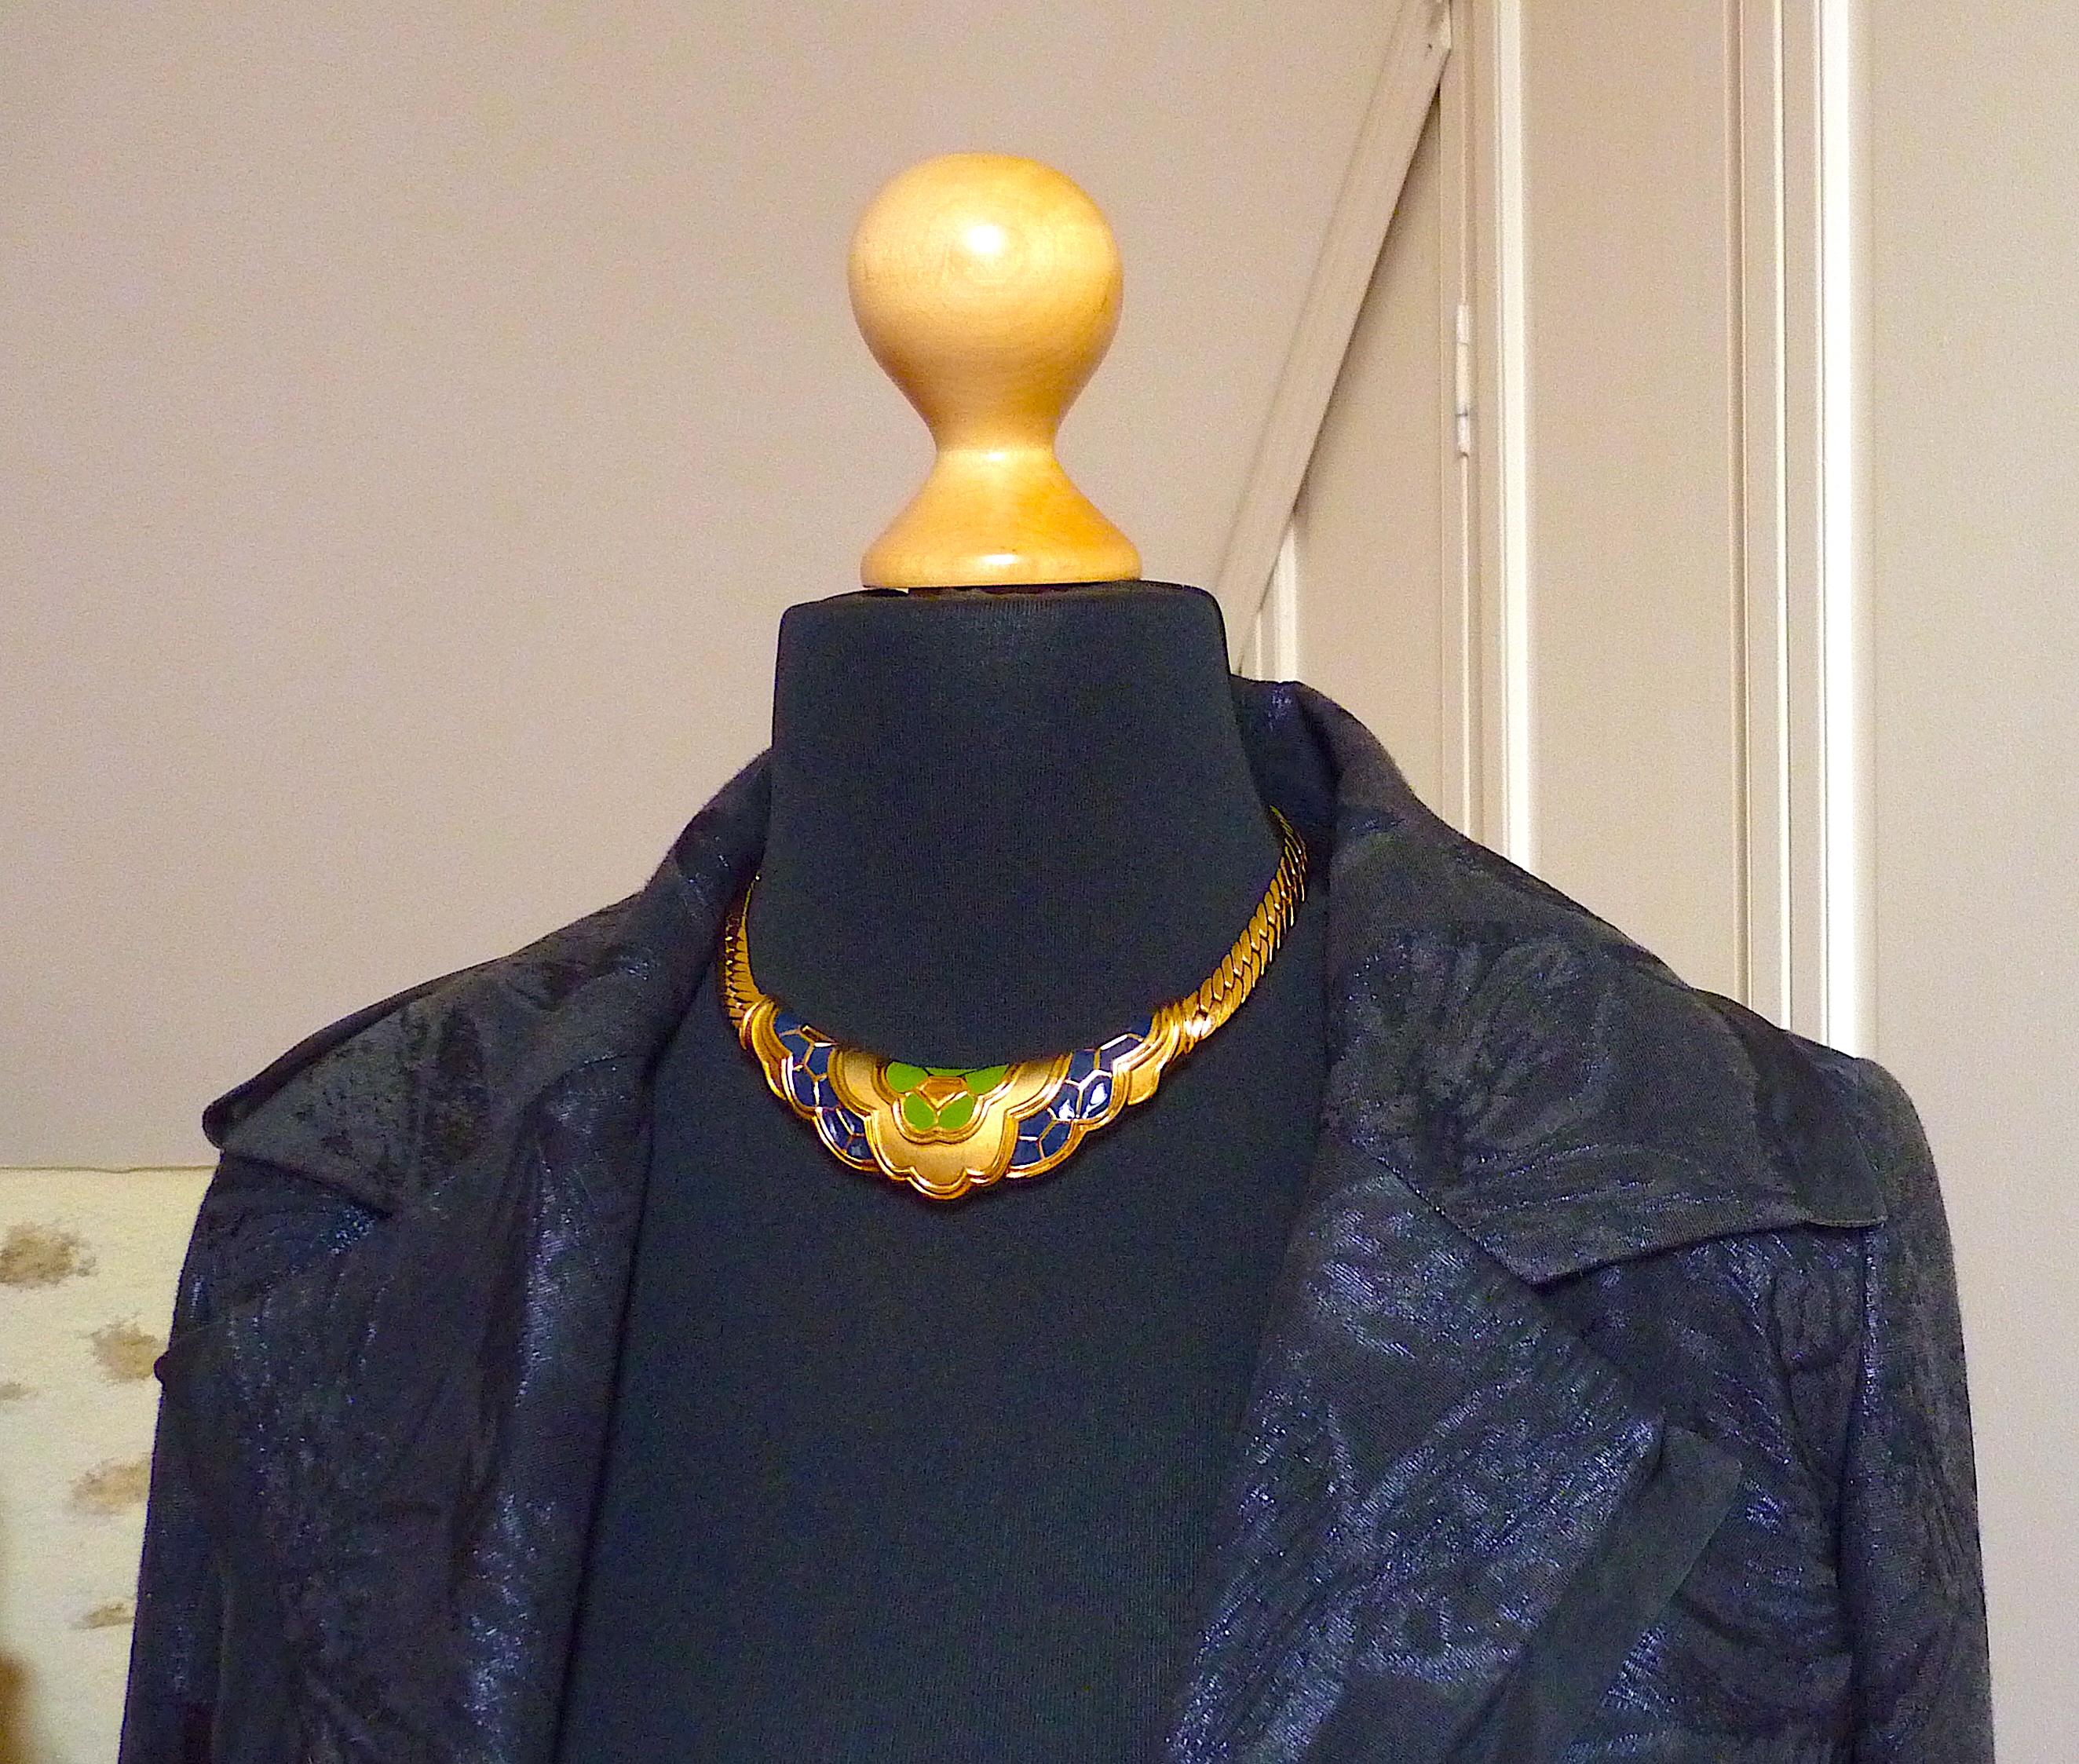 Exquisite LANVIN Choker-Halskette, grün und tiefblau emailliertes Metall und goldfarbene Metallschlangenkette, Vintage aus den 70ern
Signiert Lanvin Germany auf der Rückseite, mit einem Lanvin Logo Metallanhänger in der Nähe der Schließe

ZUSTAND :